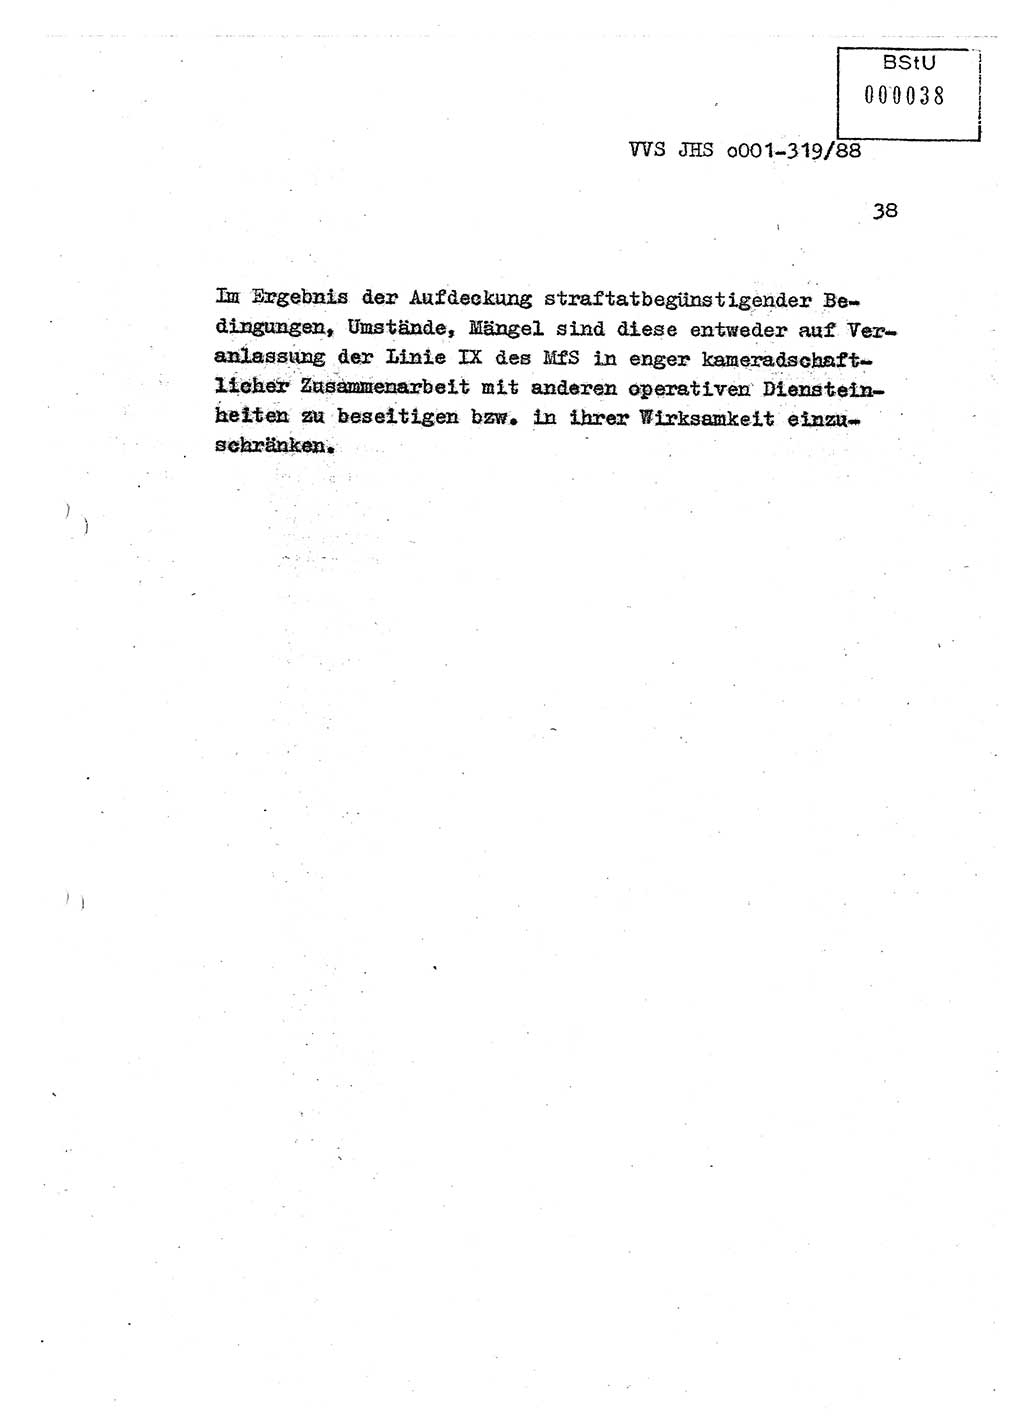 Diplomarbeit Offiziersschüler Holger Zirnstein (HA Ⅸ/9), Ministerium für Staatssicherheit (MfS) [Deutsche Demokratische Republik (DDR)], Juristische Hochschule (JHS), Vertrauliche Verschlußsache (VVS) o001-319/88, Potsdam 1988, Blatt 38 (Dipl.-Arb. MfS DDR JHS VVS o001-319/88 1988, Bl. 38)